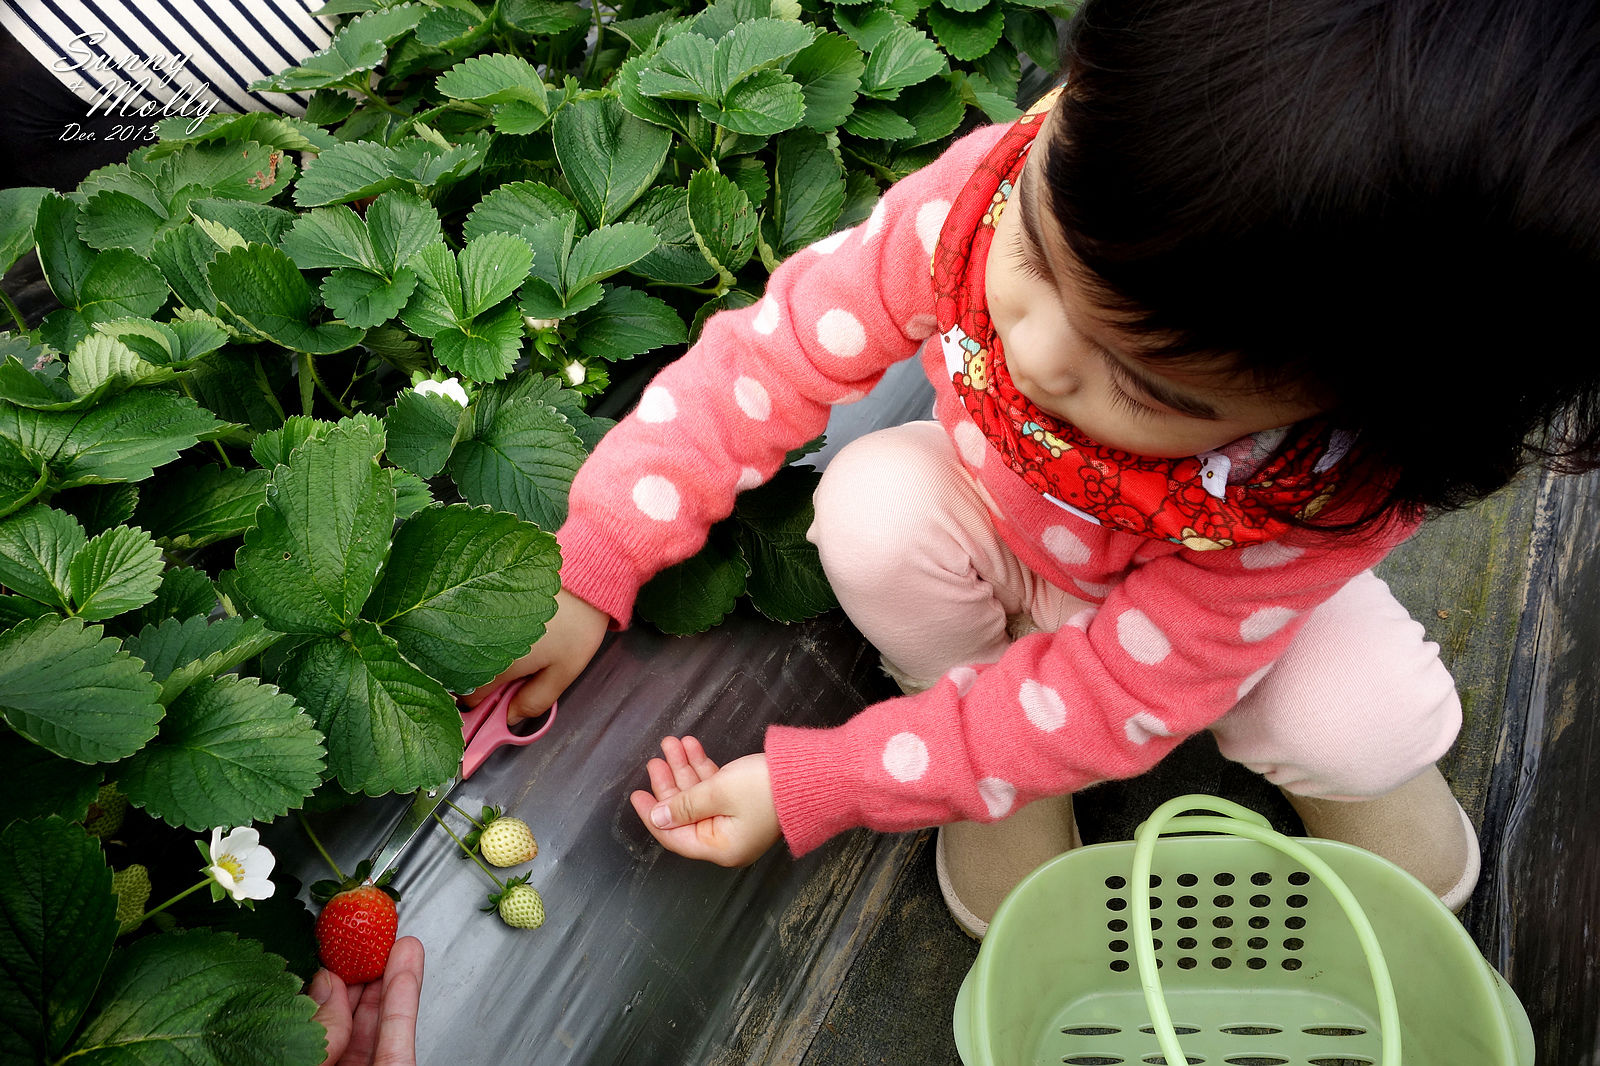 [親子旅遊。懶人包] 草莓季來囉!! 臺北、新竹、苗栗、台中、台東自採草莓農場、景點、行程推薦 @兔兒毛毛姊妹花